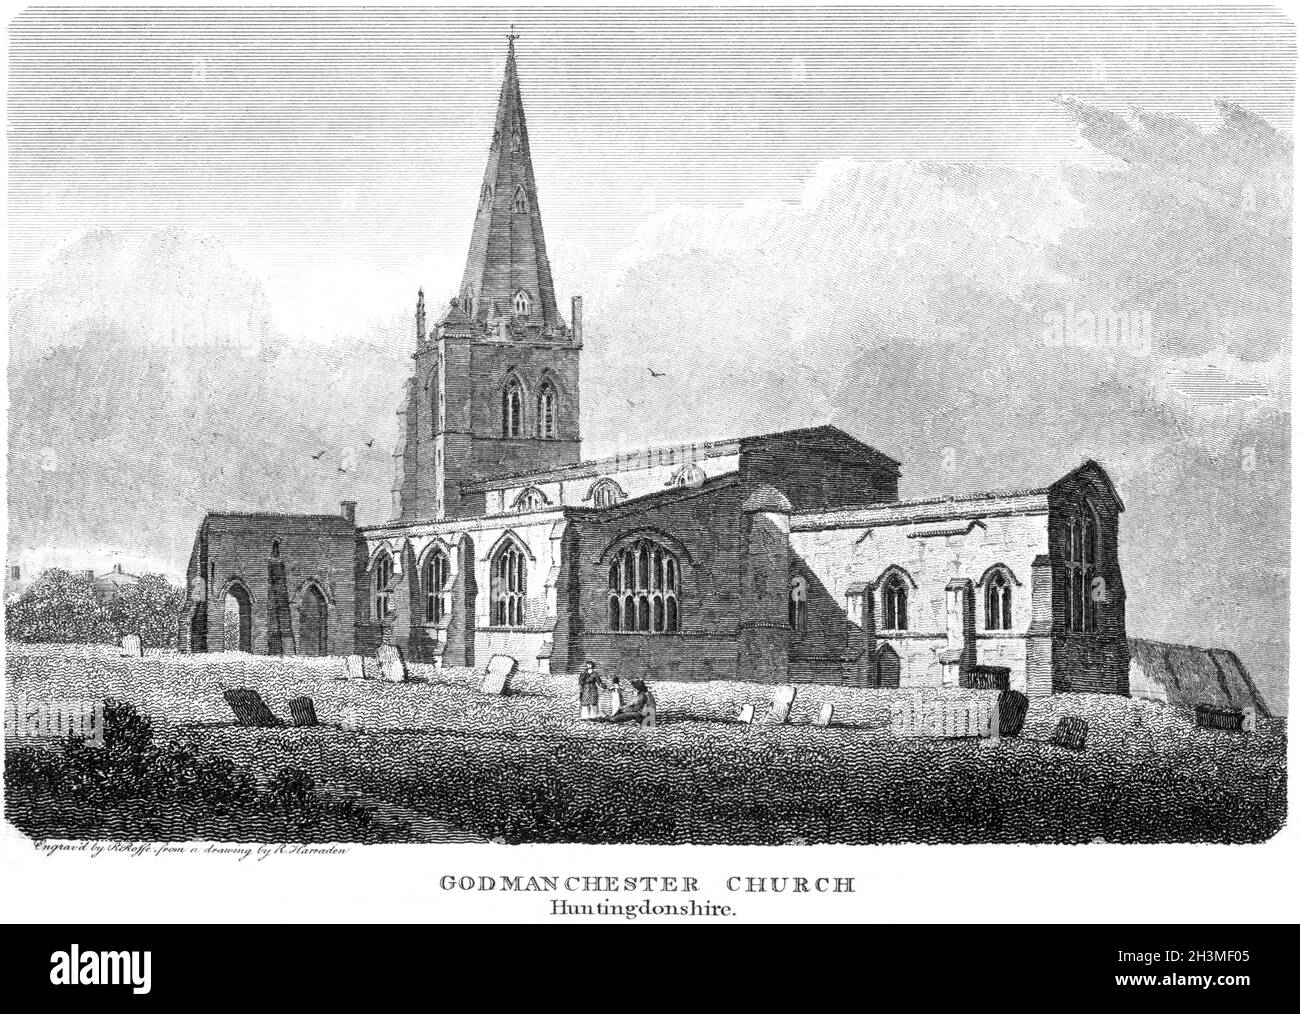 Ein Stich der Godmanchester Church, Huntingdonshire (jetzt Cambridgeshire) UK, gescannt mit hoher Auflösung aus einem Buch aus dem Jahr 1812. Stockfoto